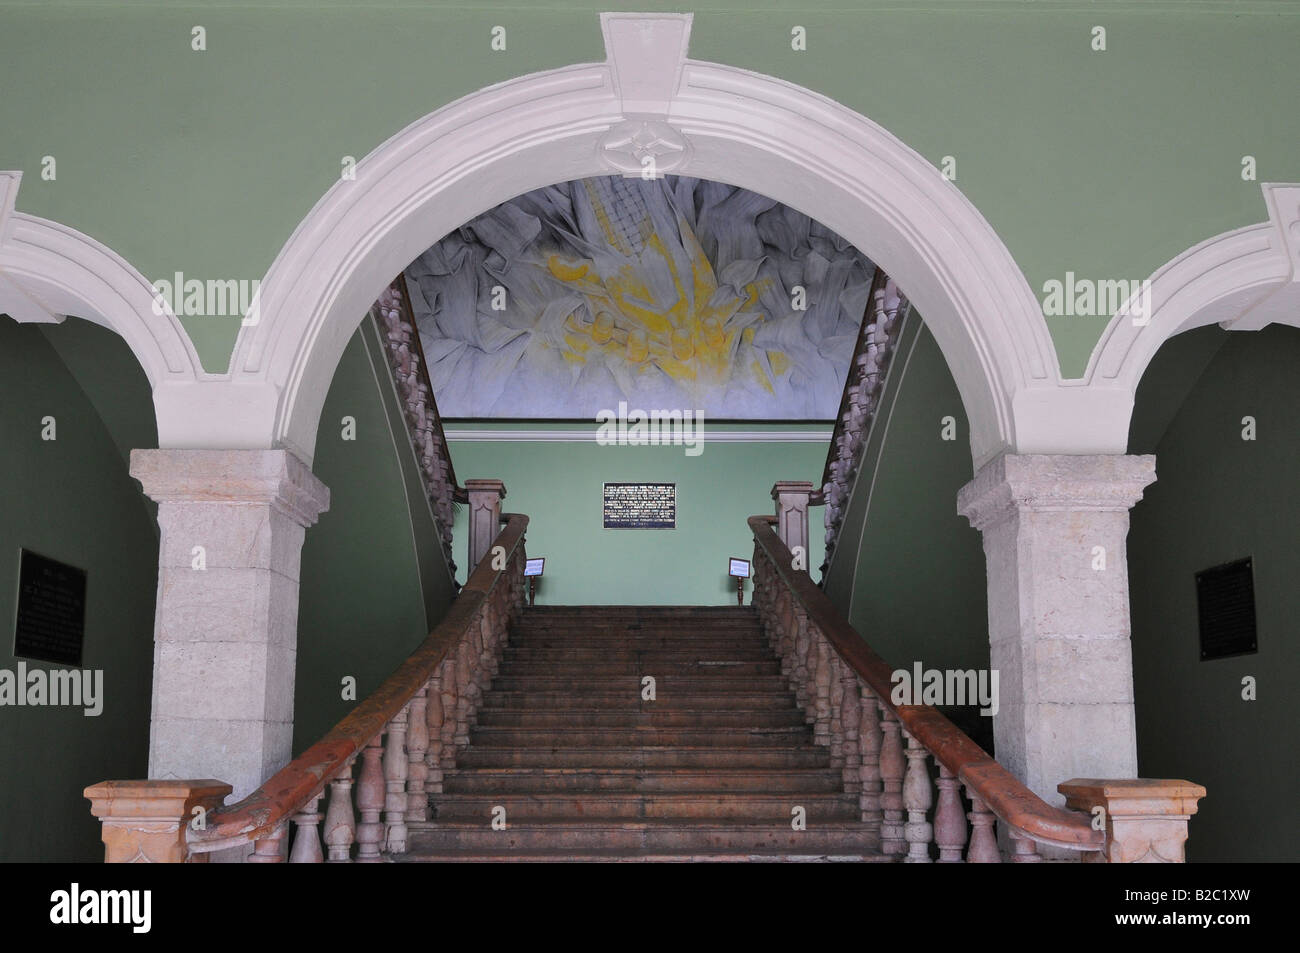 Palacio de Gobierno Palace, inner courtyard, staircase, Merida, Yucatan, Mexico, Central America Stock Photo